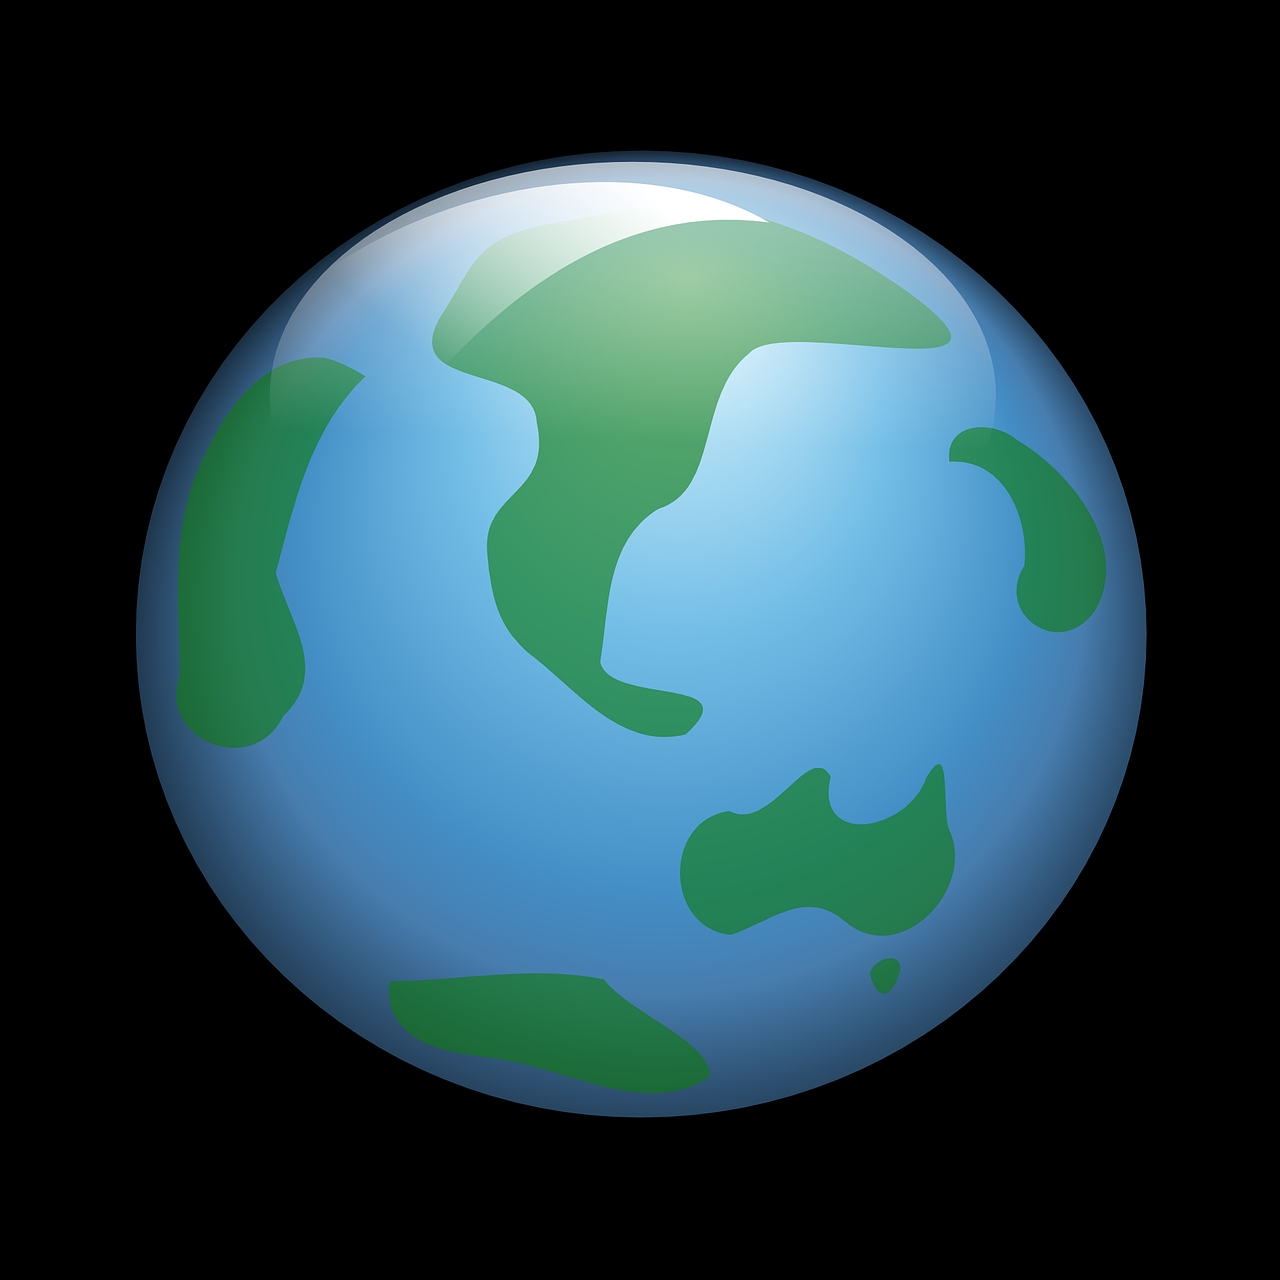 Gaublys, Pasaulis, Žemė, Planeta, Sfera, Visuotinis, Mėlynas, Geografija, Žemynai, Tarptautinis